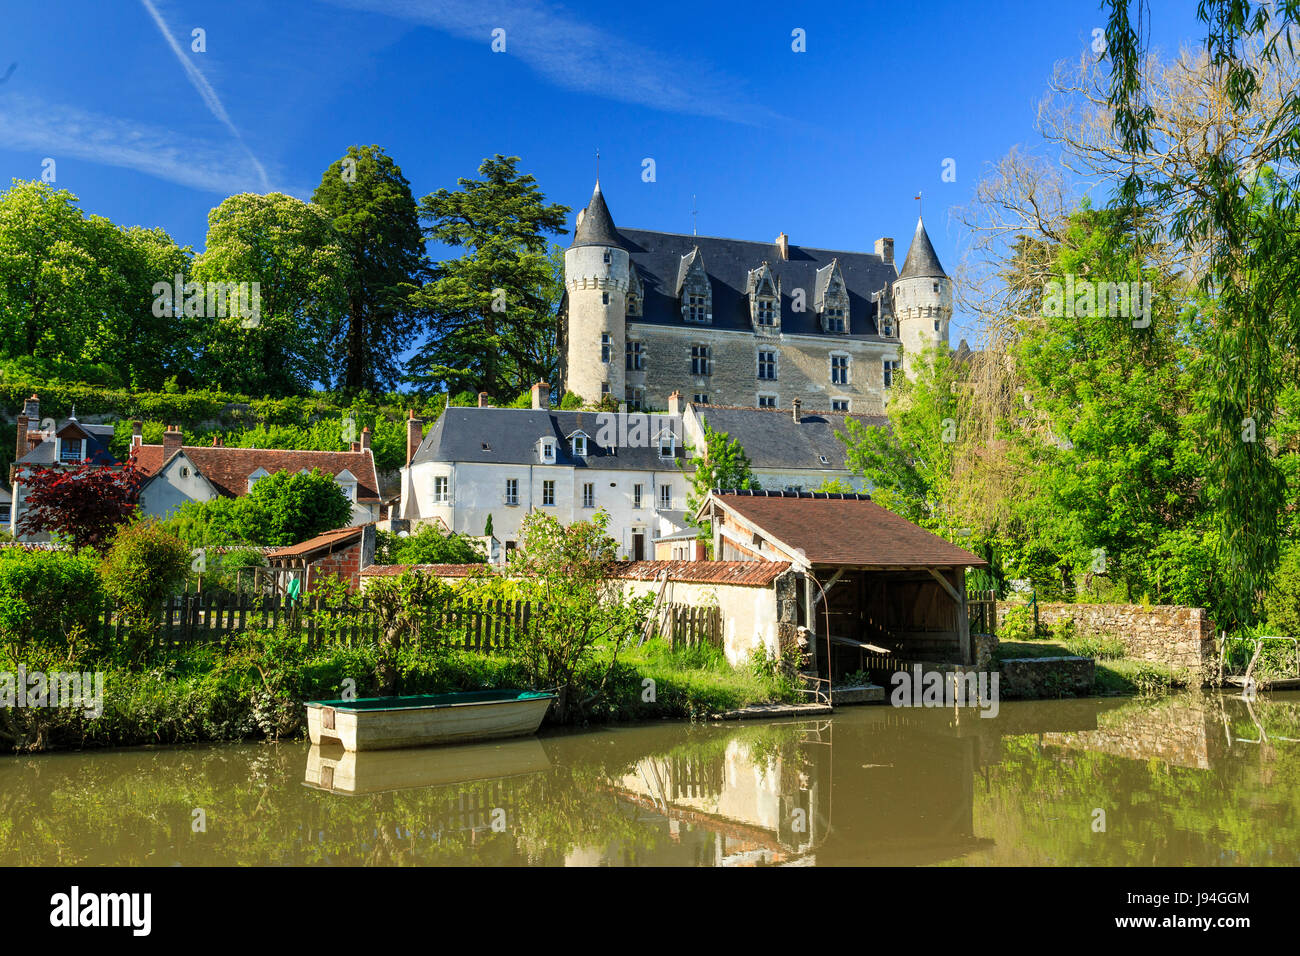 Indre et Loire, Montresor, les plus Beaux villages de France (les plus beaux villages de France), maisons et château le long de l'Indrois Banque D'Images